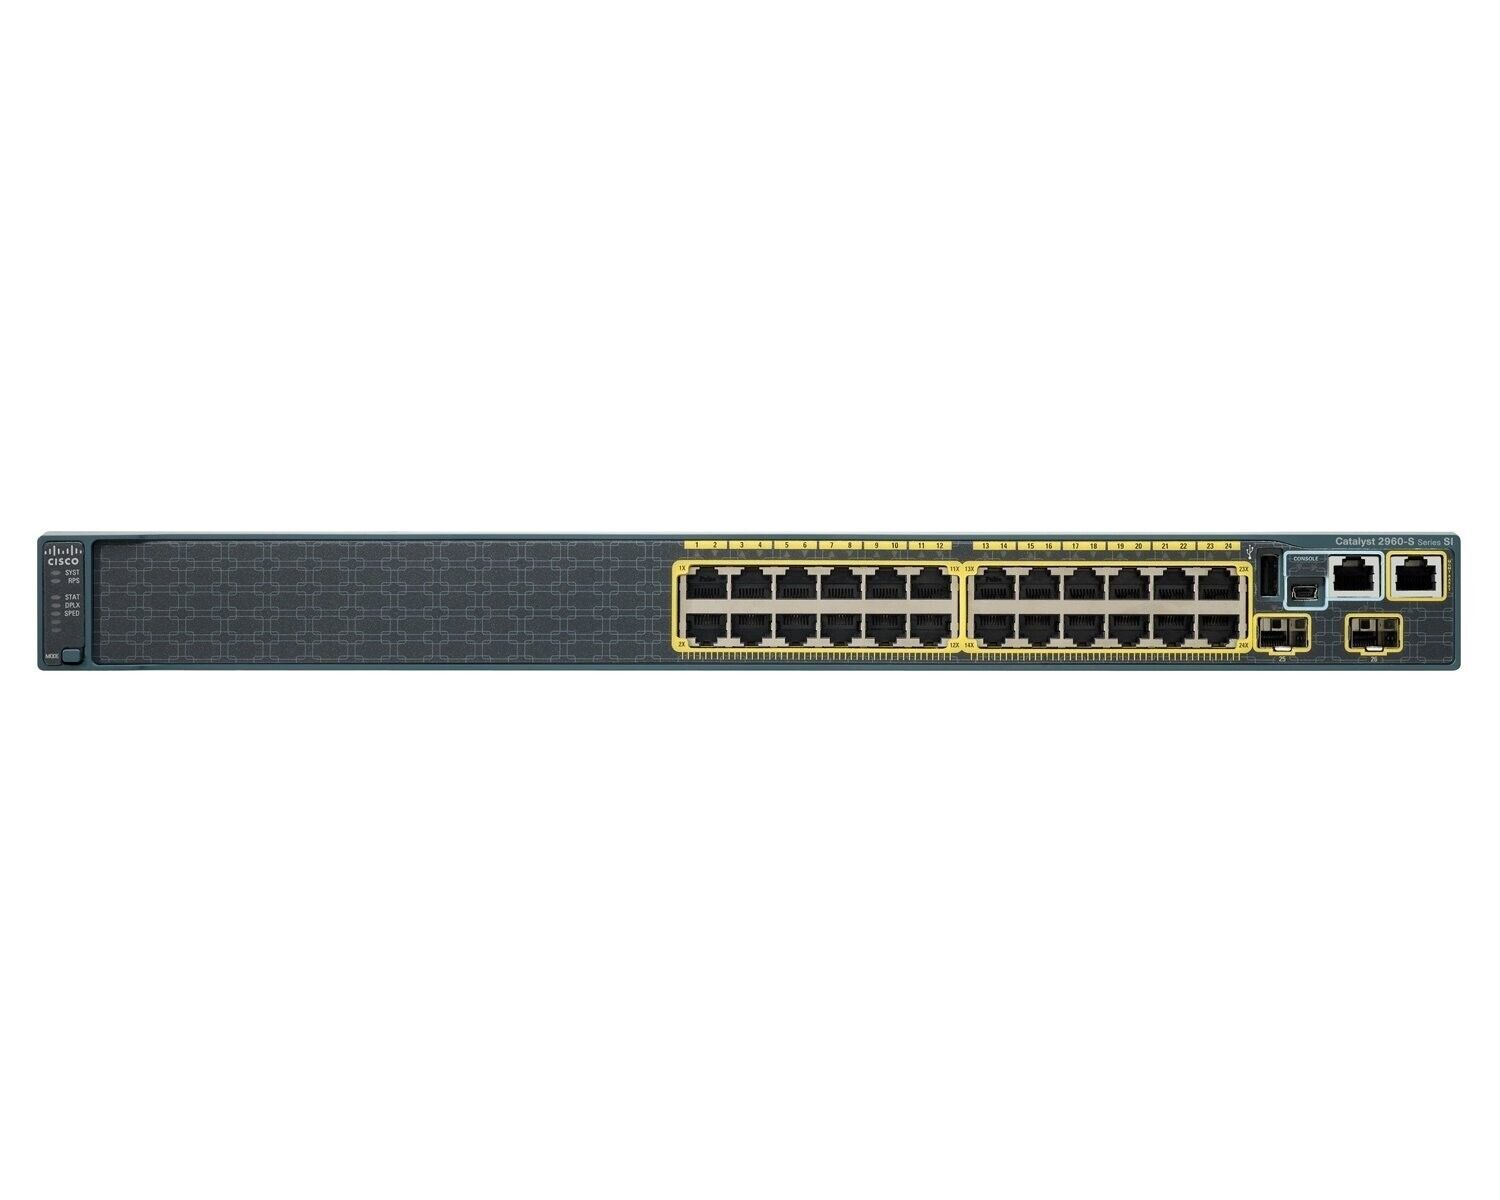 NEW Cisco Catalyst 2960 Series WS-C2960S-24TS-L V03 24 Port Gigabit Switch (CI)